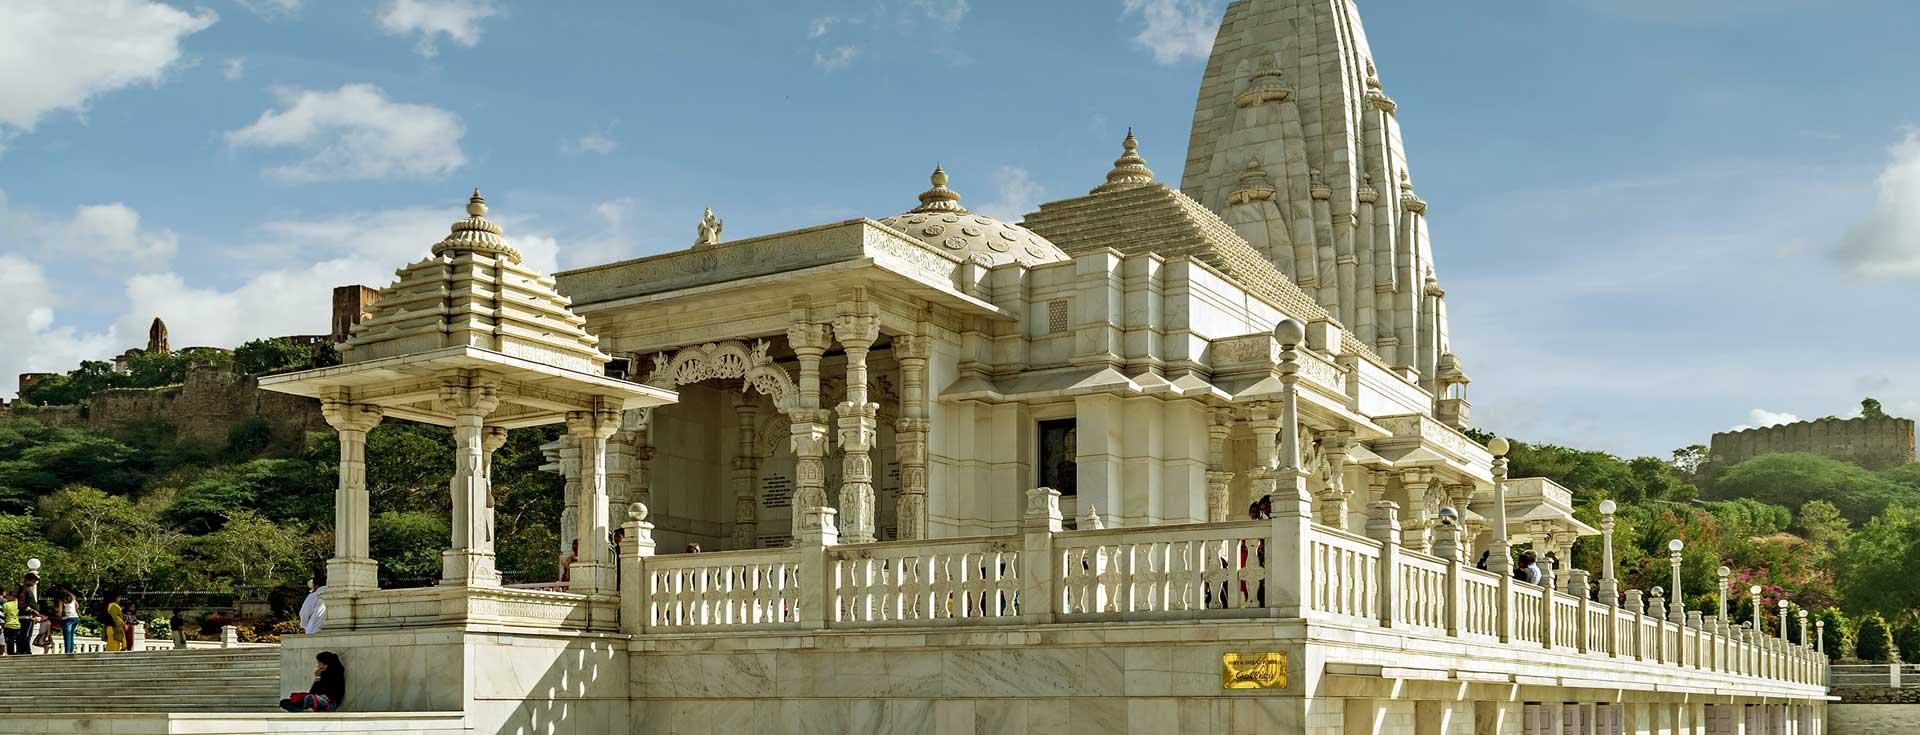 Explore Laxmi Narayan Temple in Jaipur